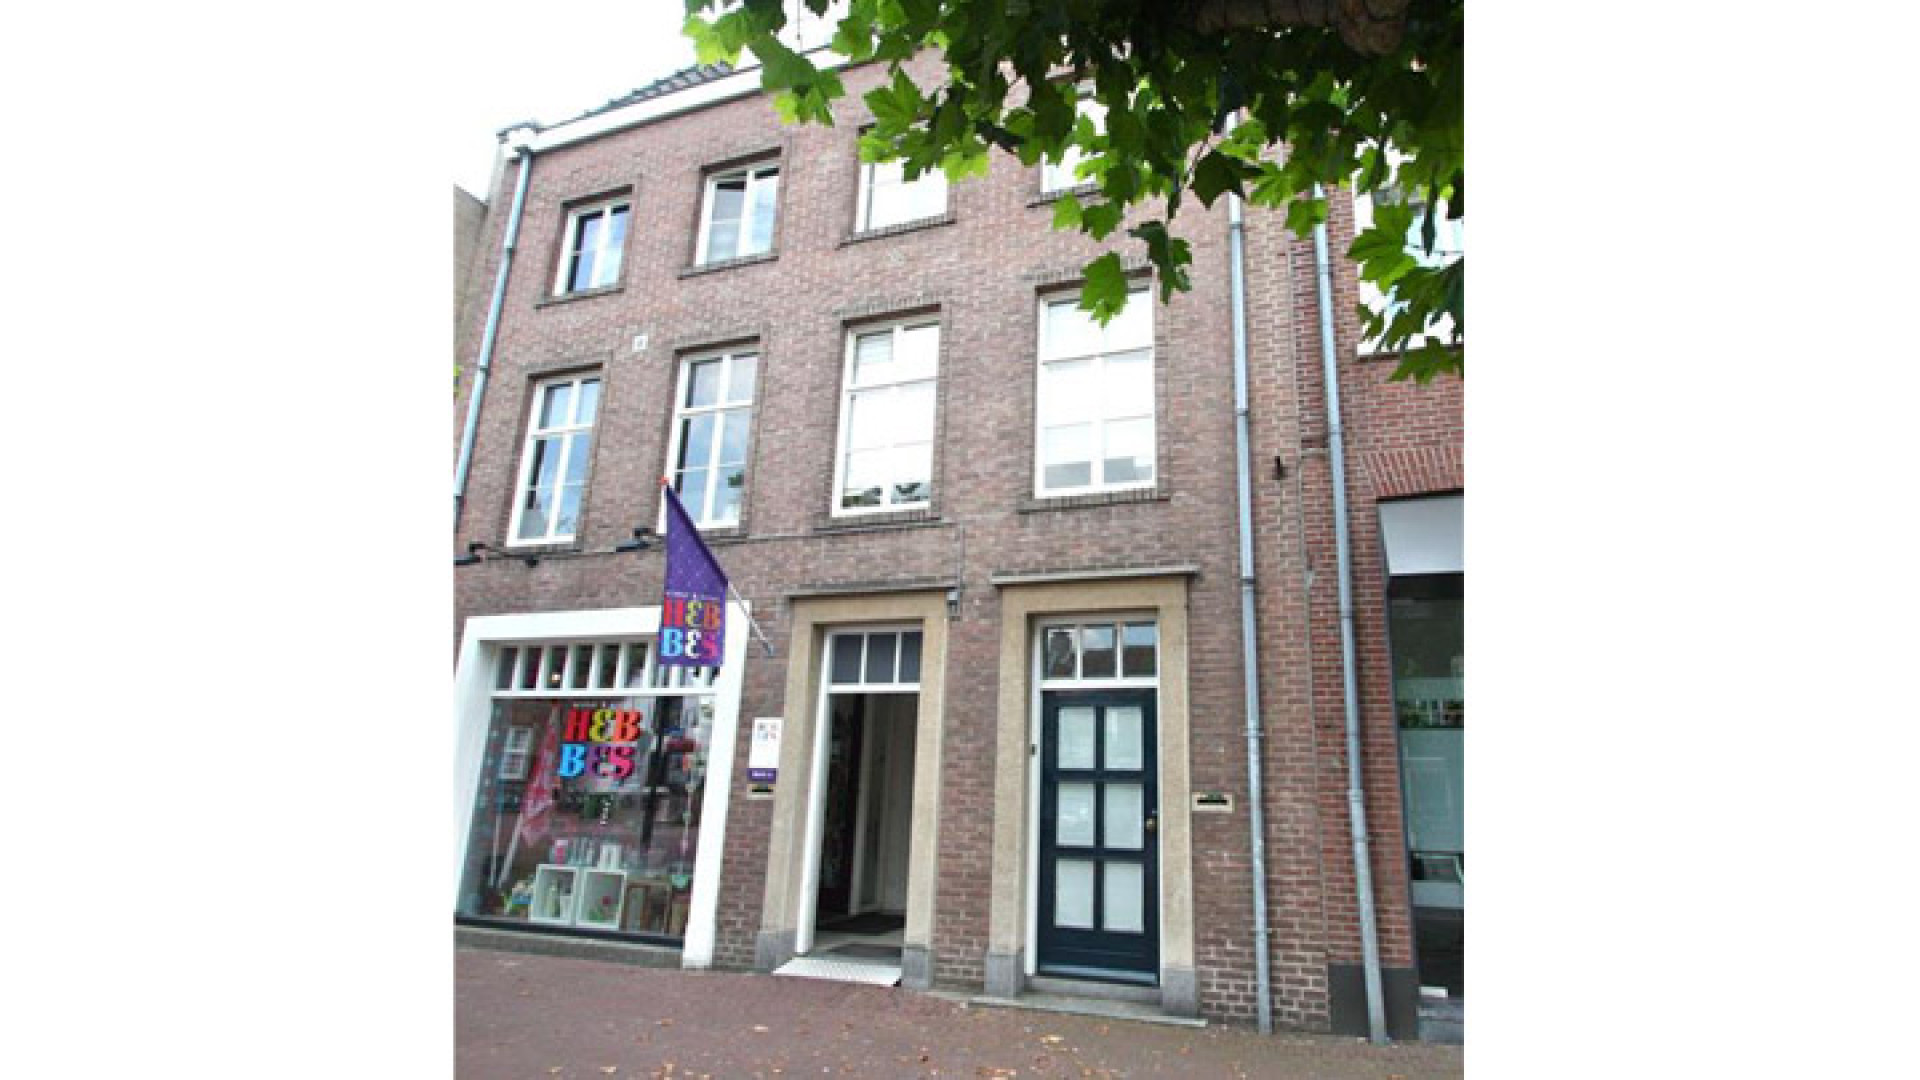 Binnenkijken bij te koopstaand appartement van failliete Geert Hoes. Zie foto's 1